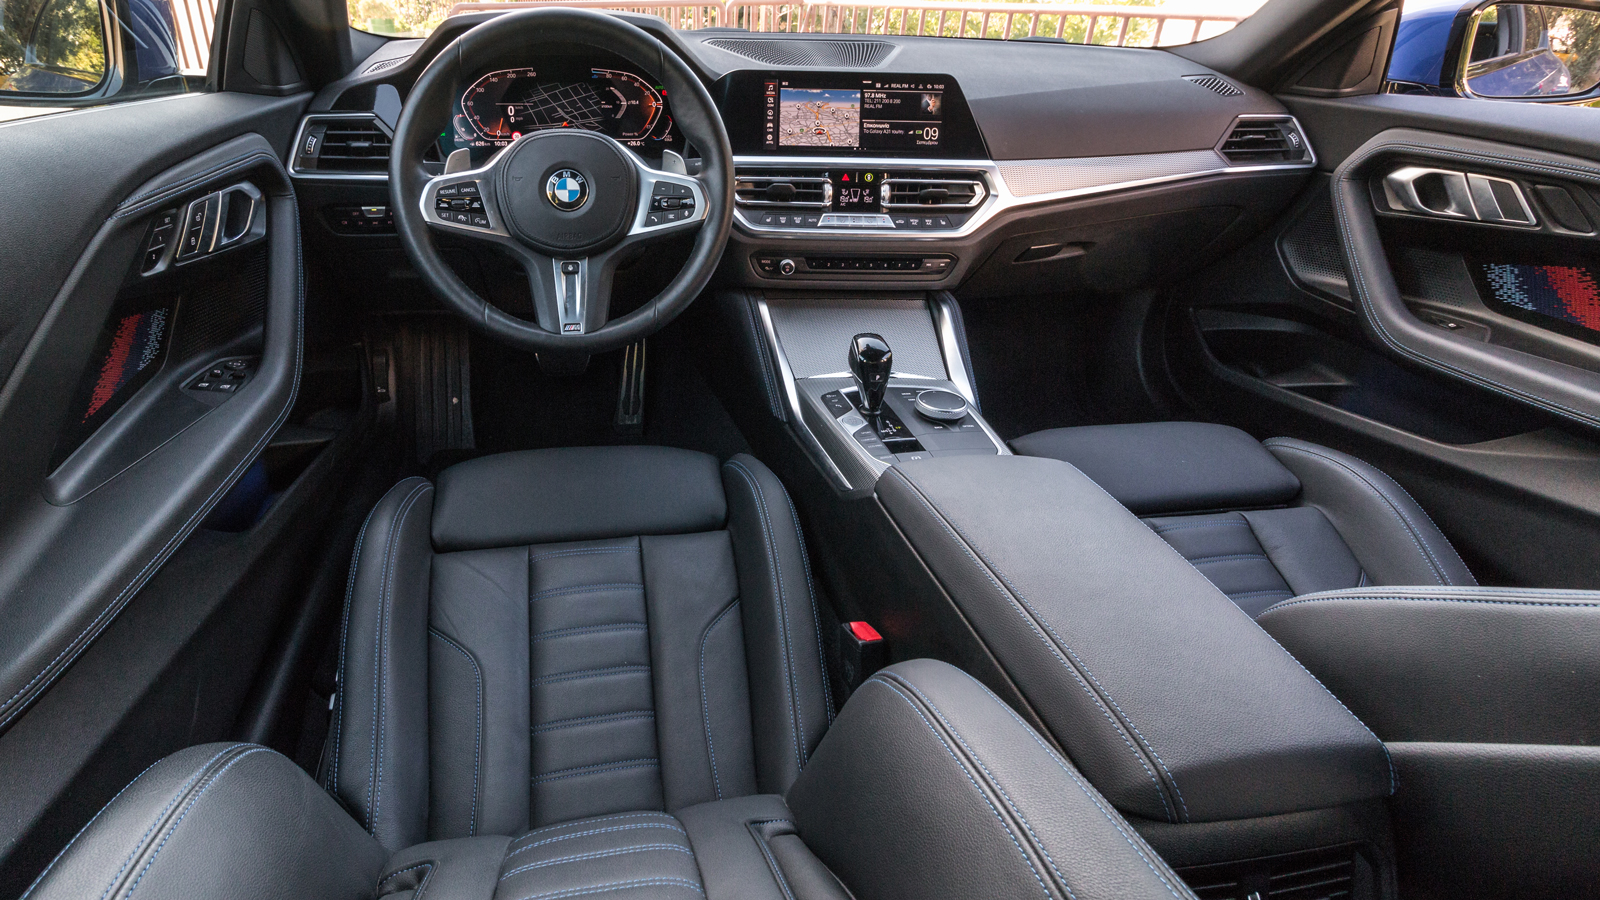 Ποιοτική με οδηγοκεντρική σχεδίαση και hi-tech διάκοσμο η καμπίνα της BMW 220d. Ξεχωρίζει το button εκκίνησης στην κεντρική κονσόλα